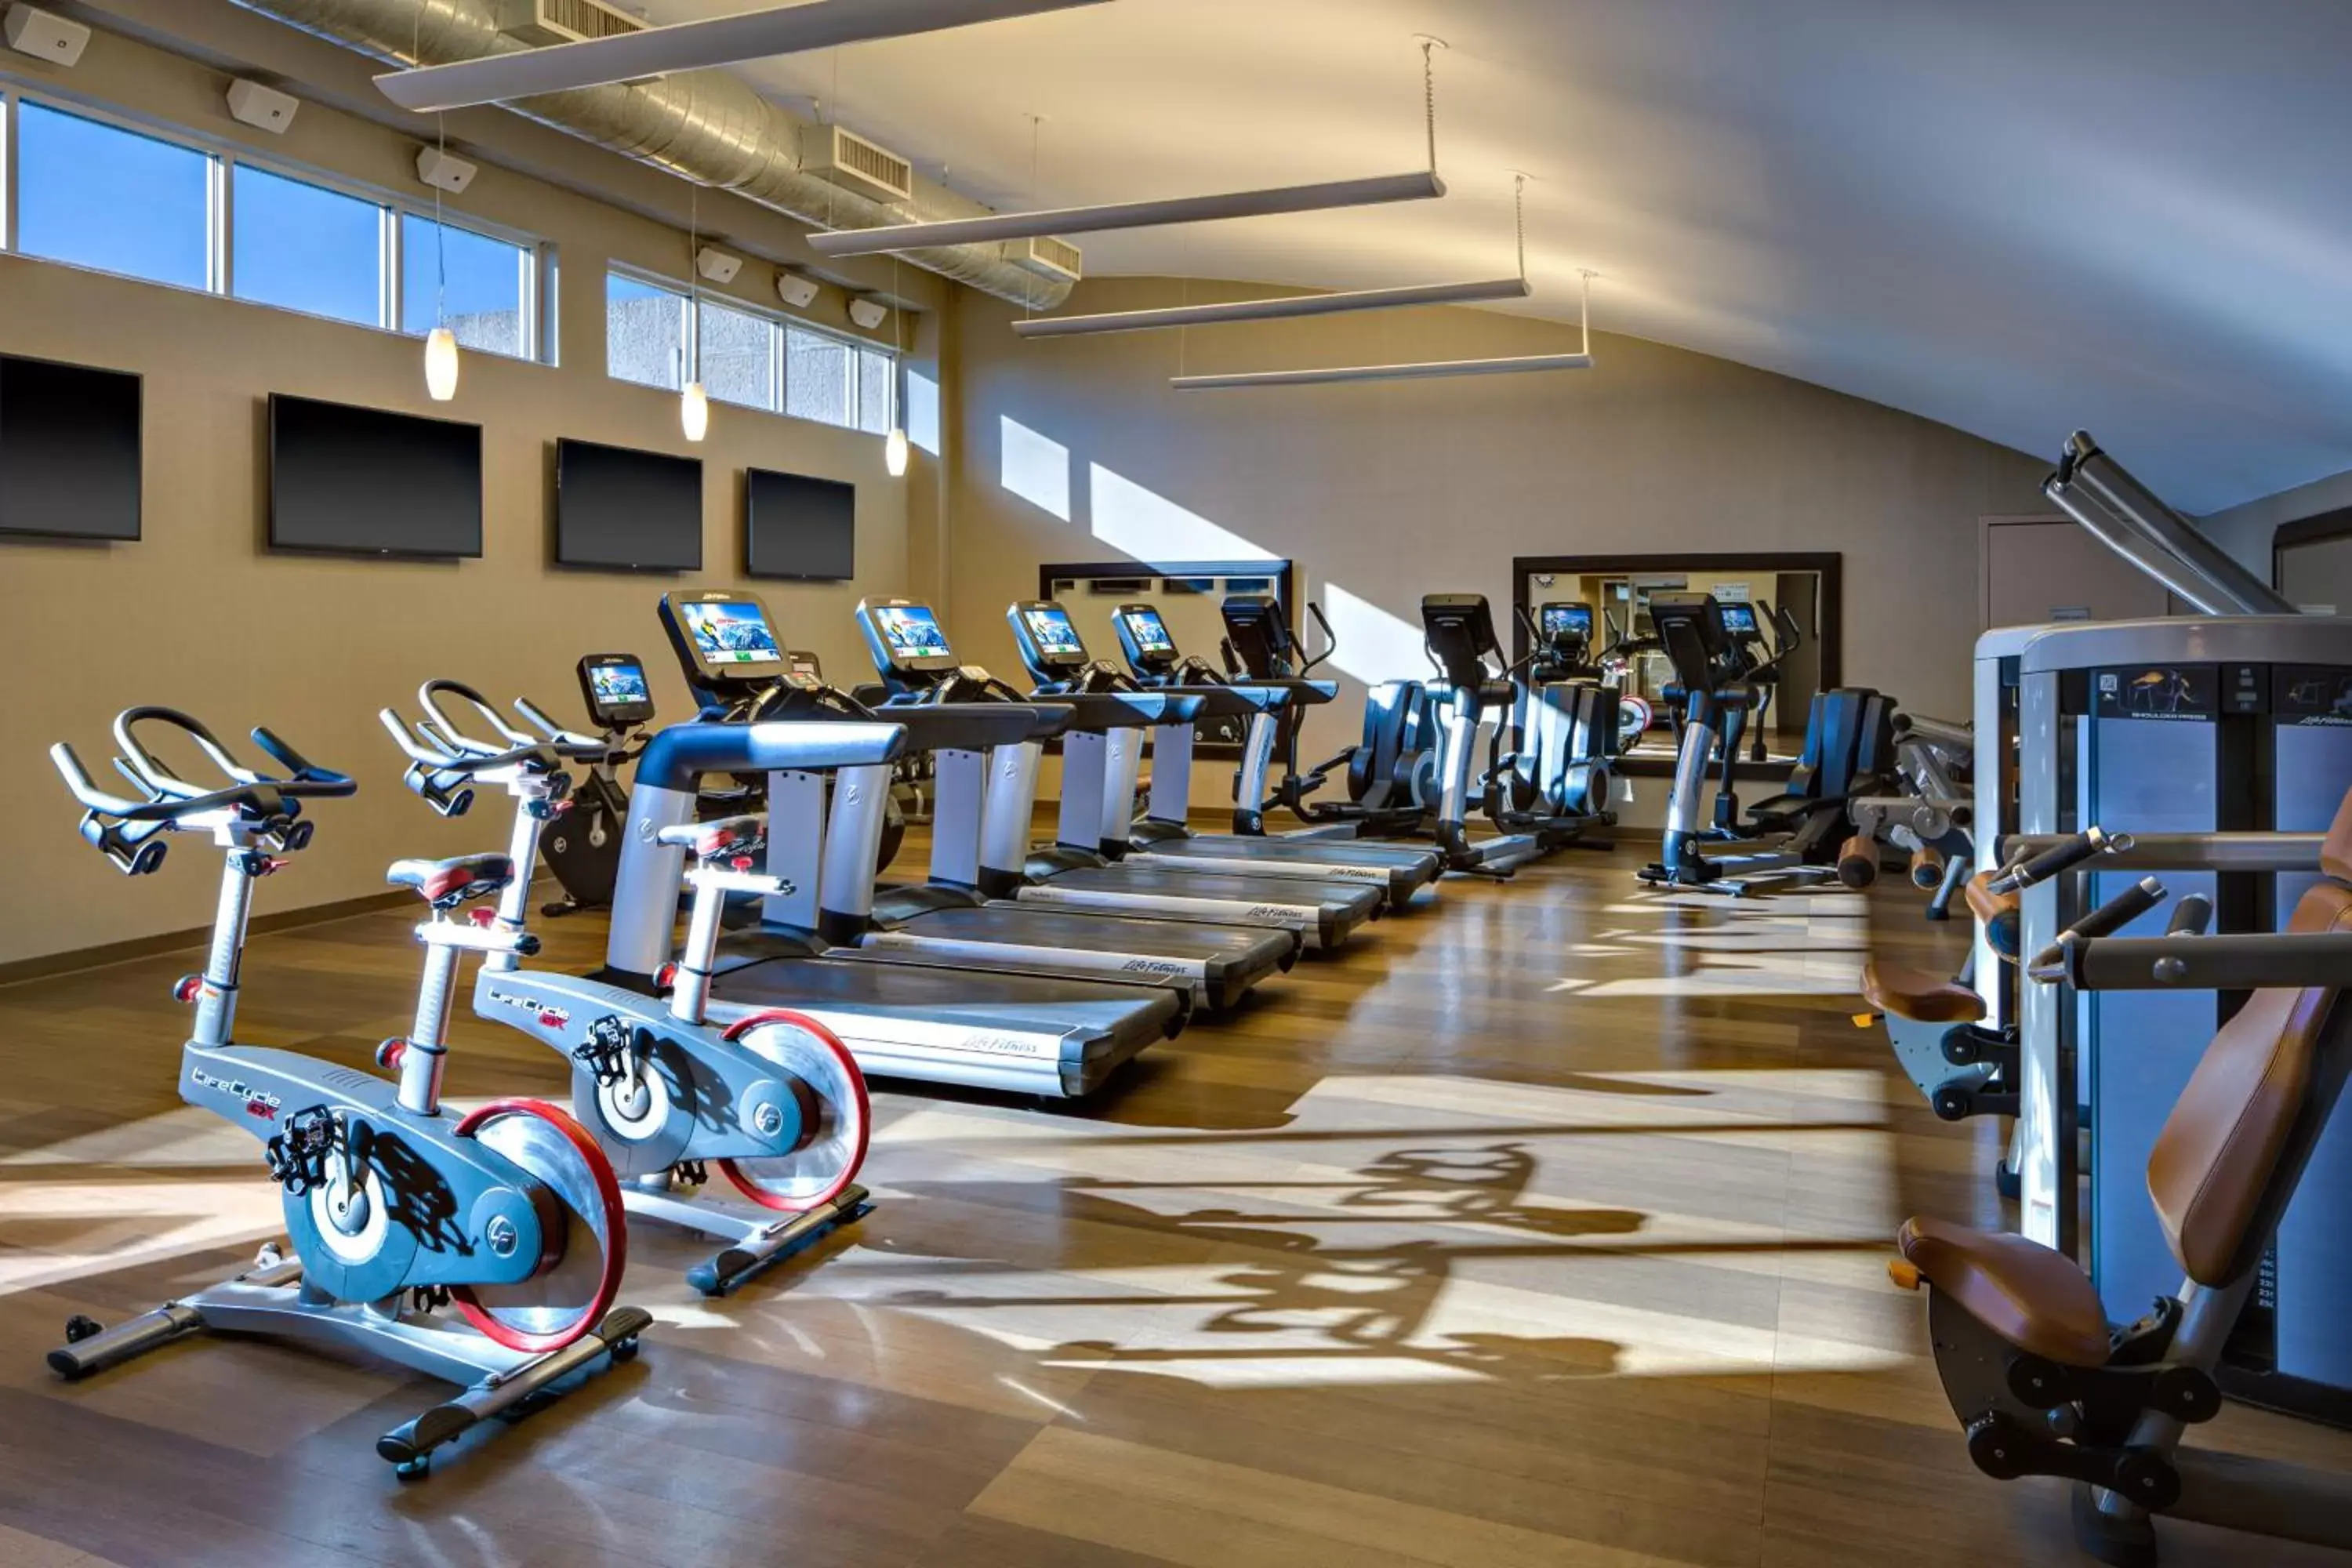 Fitness centre/facilities, Fitness Center/Facilities in Hyatt Regency San Antonio Riverwalk